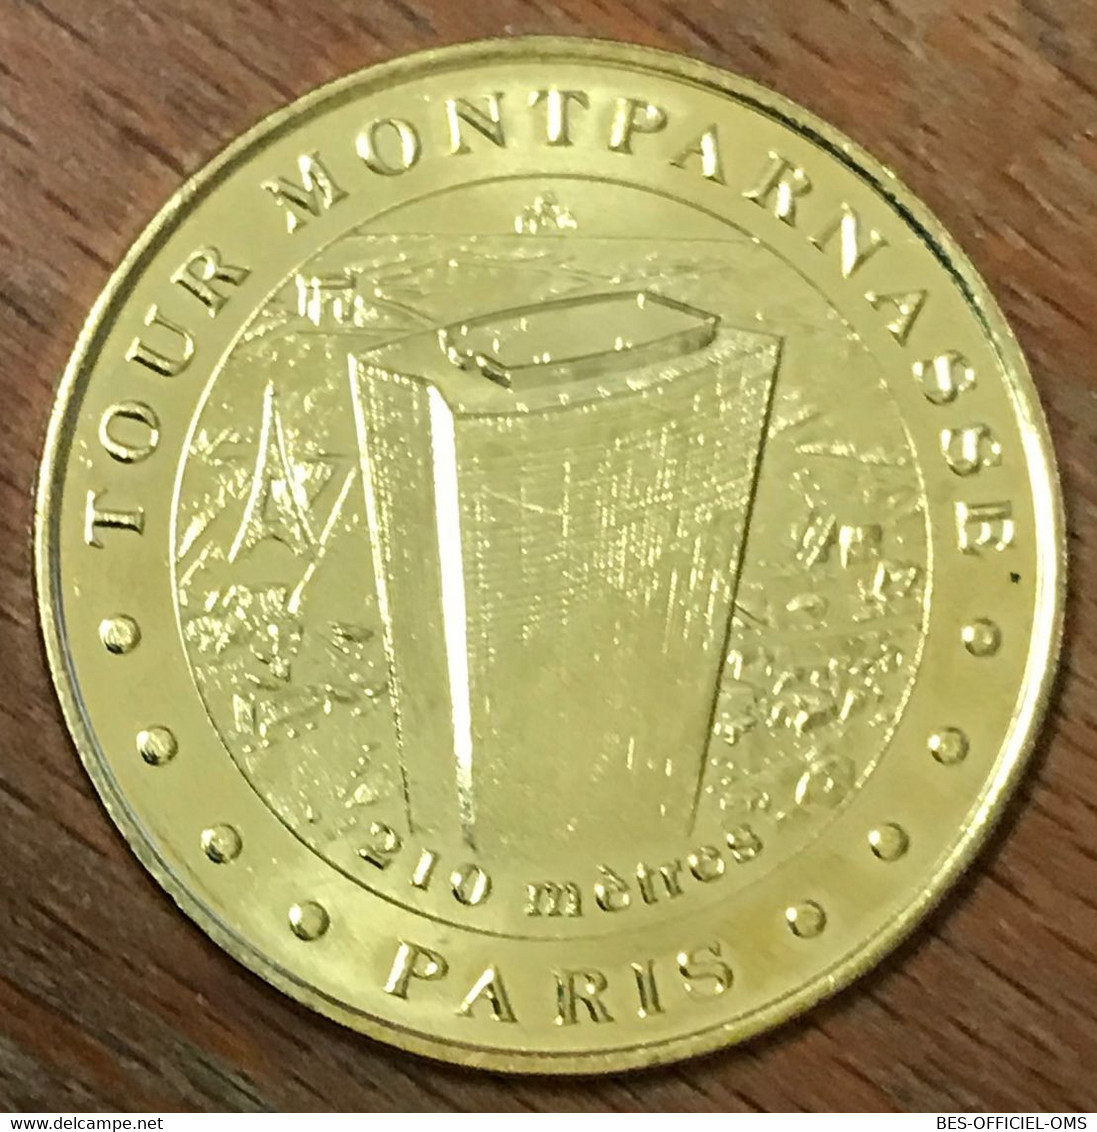 75015 PARIS TOUR MONTPARNASSE MDP 2019 MÉDAILLE SOUVENIR MONNAIE DE PARIS JETON TOURISTIQUE MEDALS COINS TOKENS - 2019